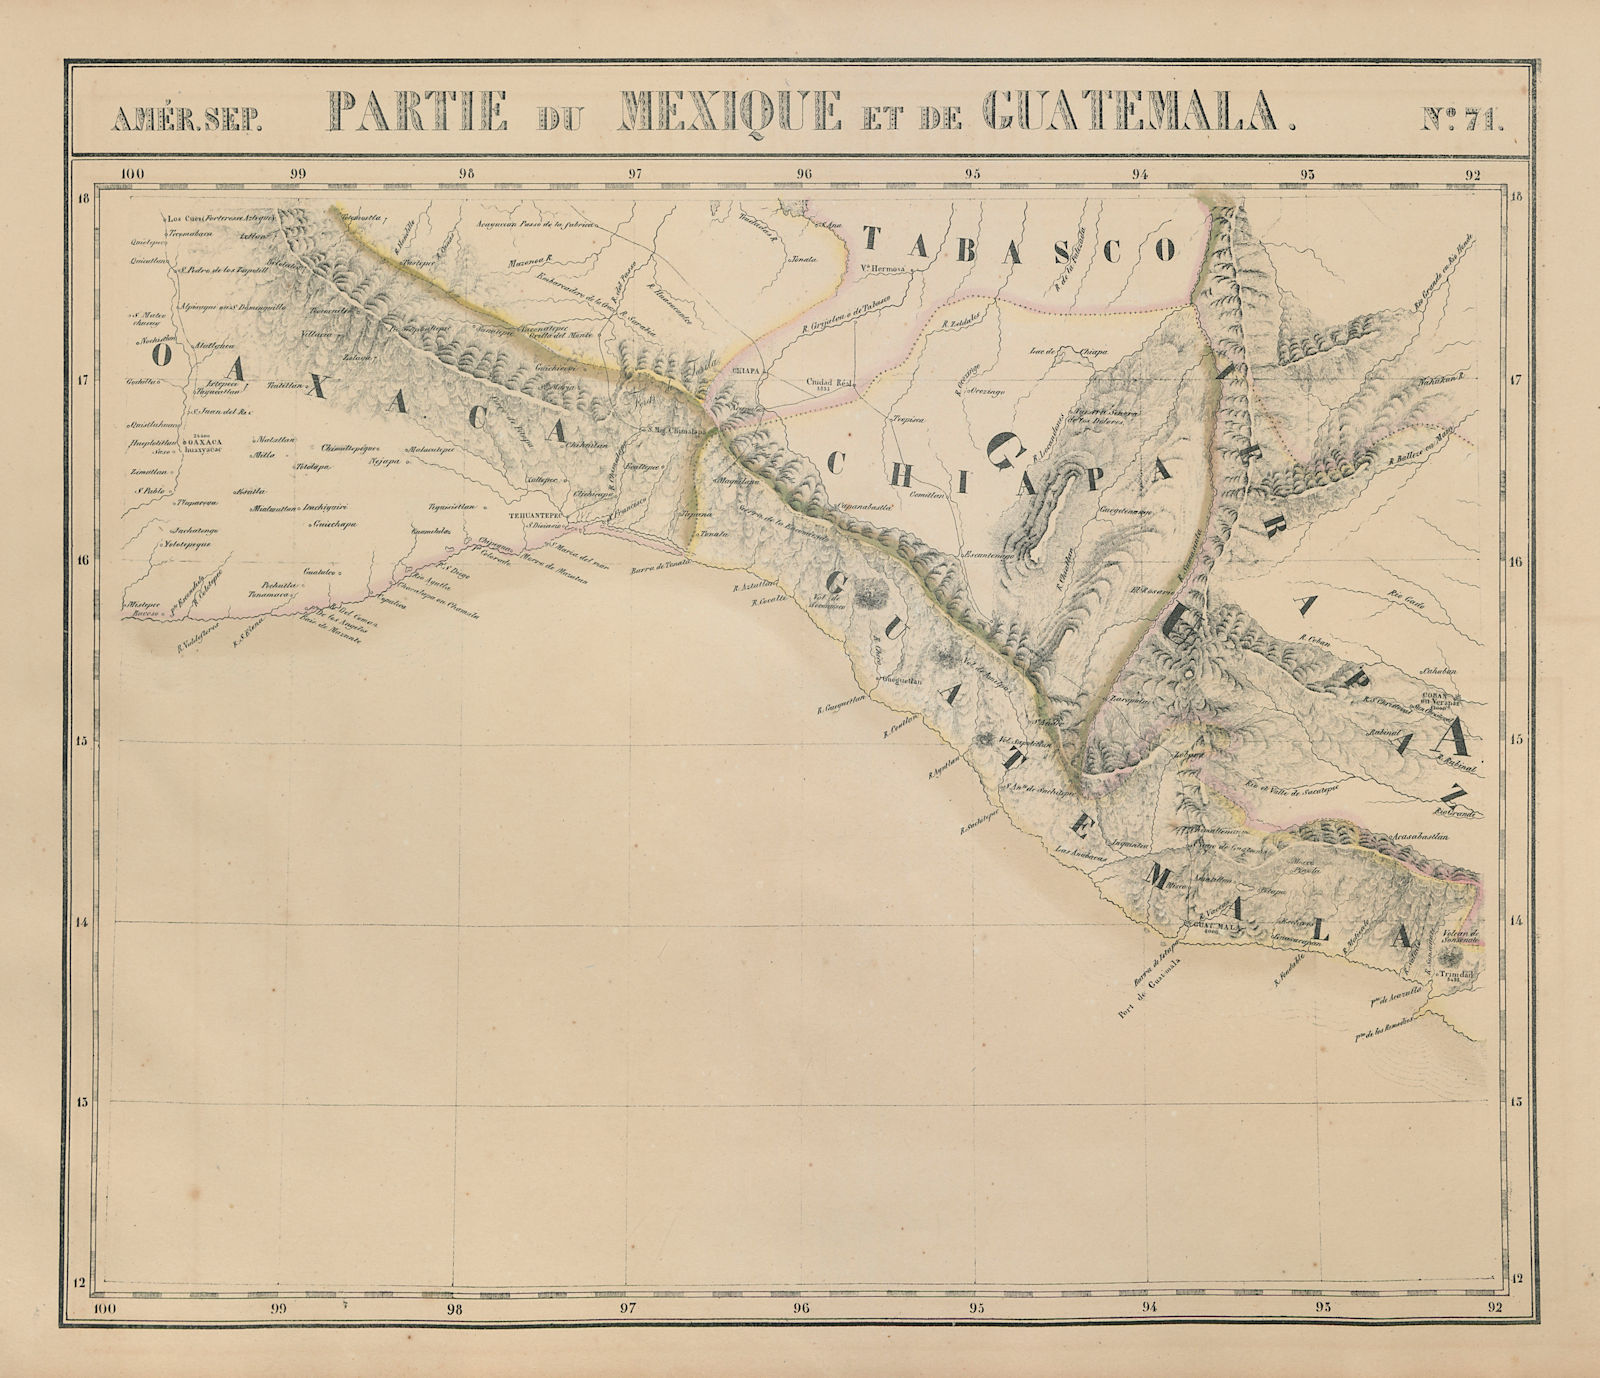 Amér Sep. Partie du Mexique & Guatemala #71 Oaxaca Chiapas VANDERMAELEN 1827 map